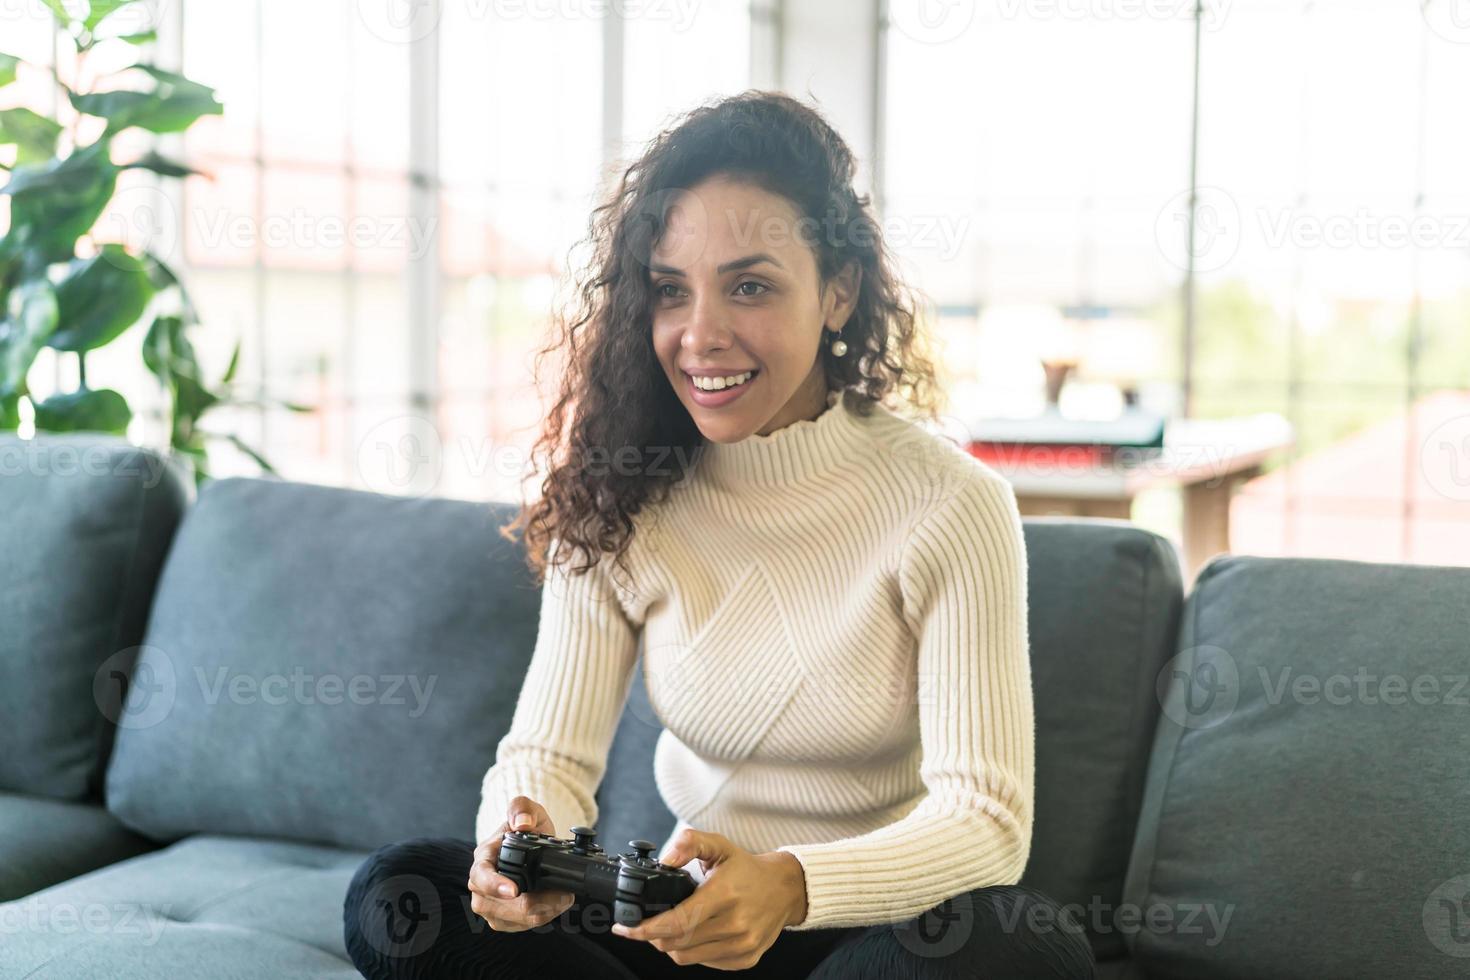 femme laitine jouant à des jeux vidéo avec les mains tenant le joystick photo